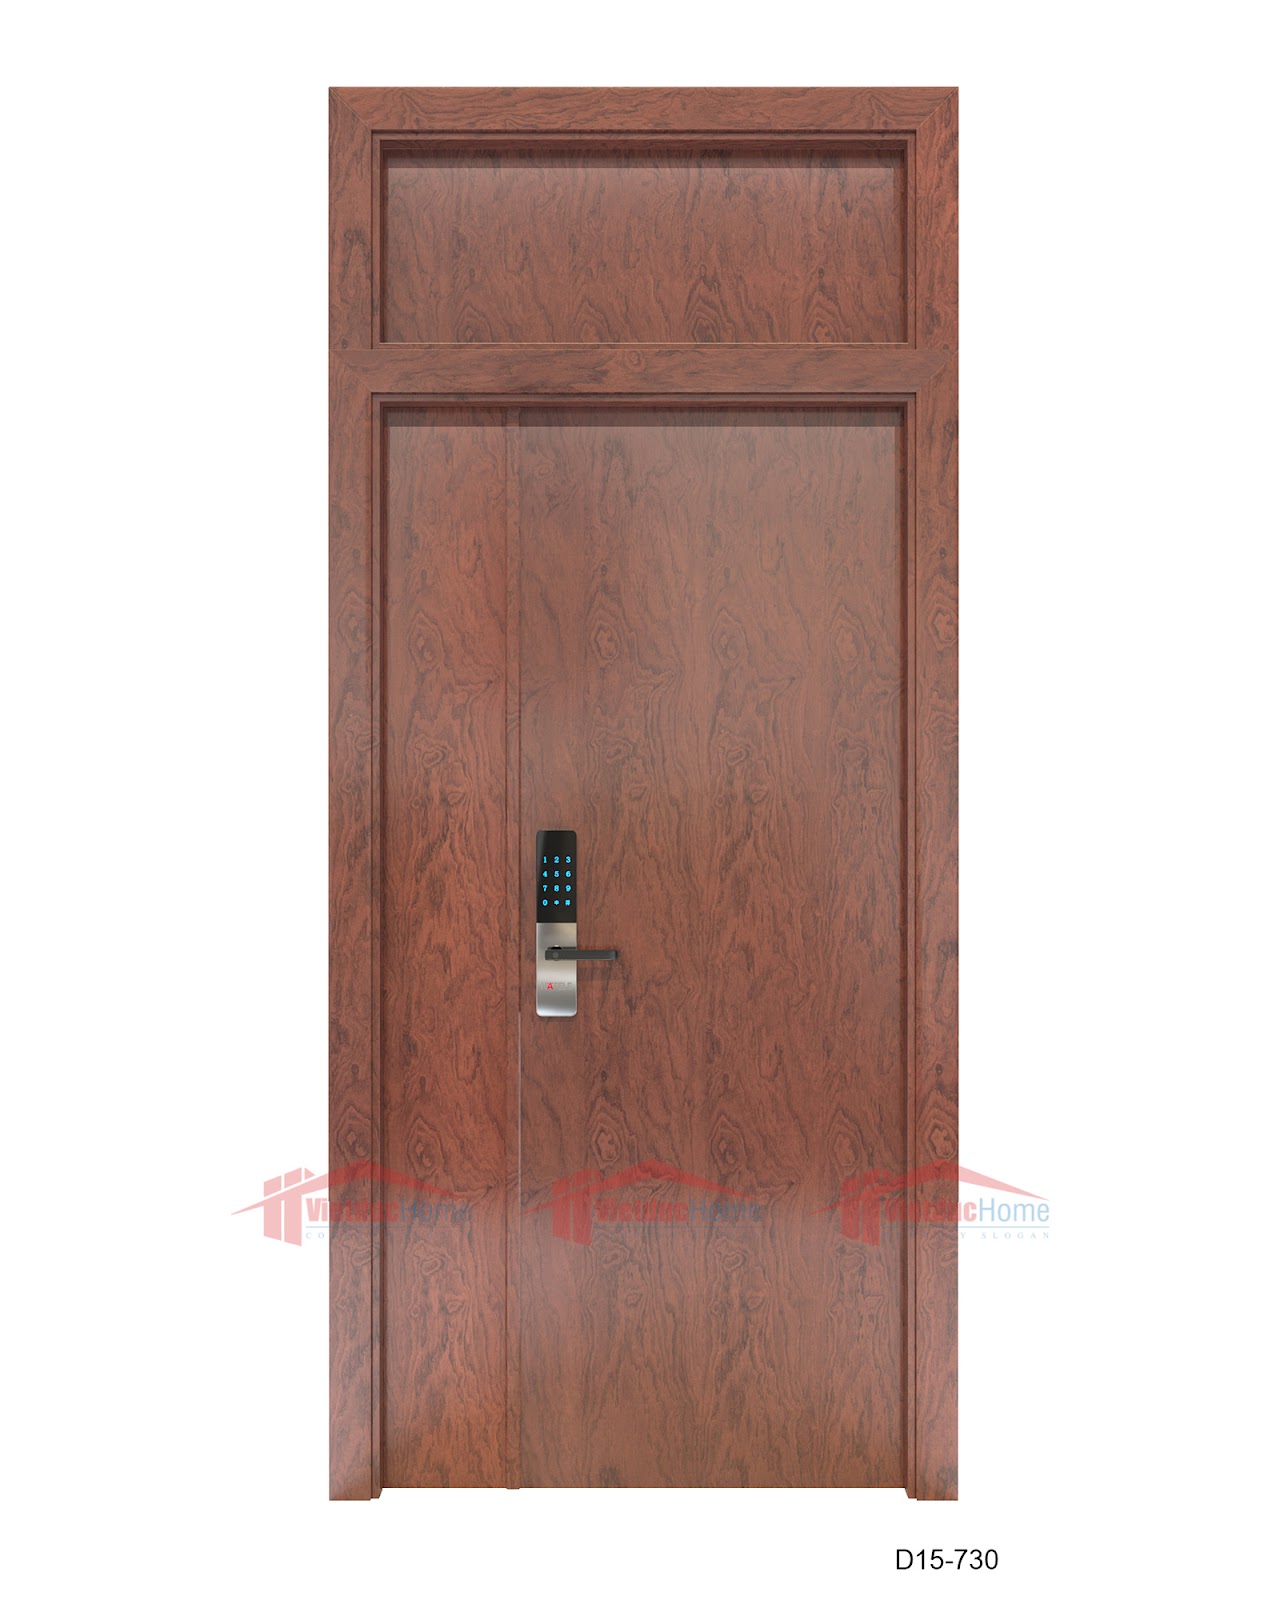 Mẫu cửa gỗ nhựa họa tiết vân gỗ D15-730 của Việt Đức Home.